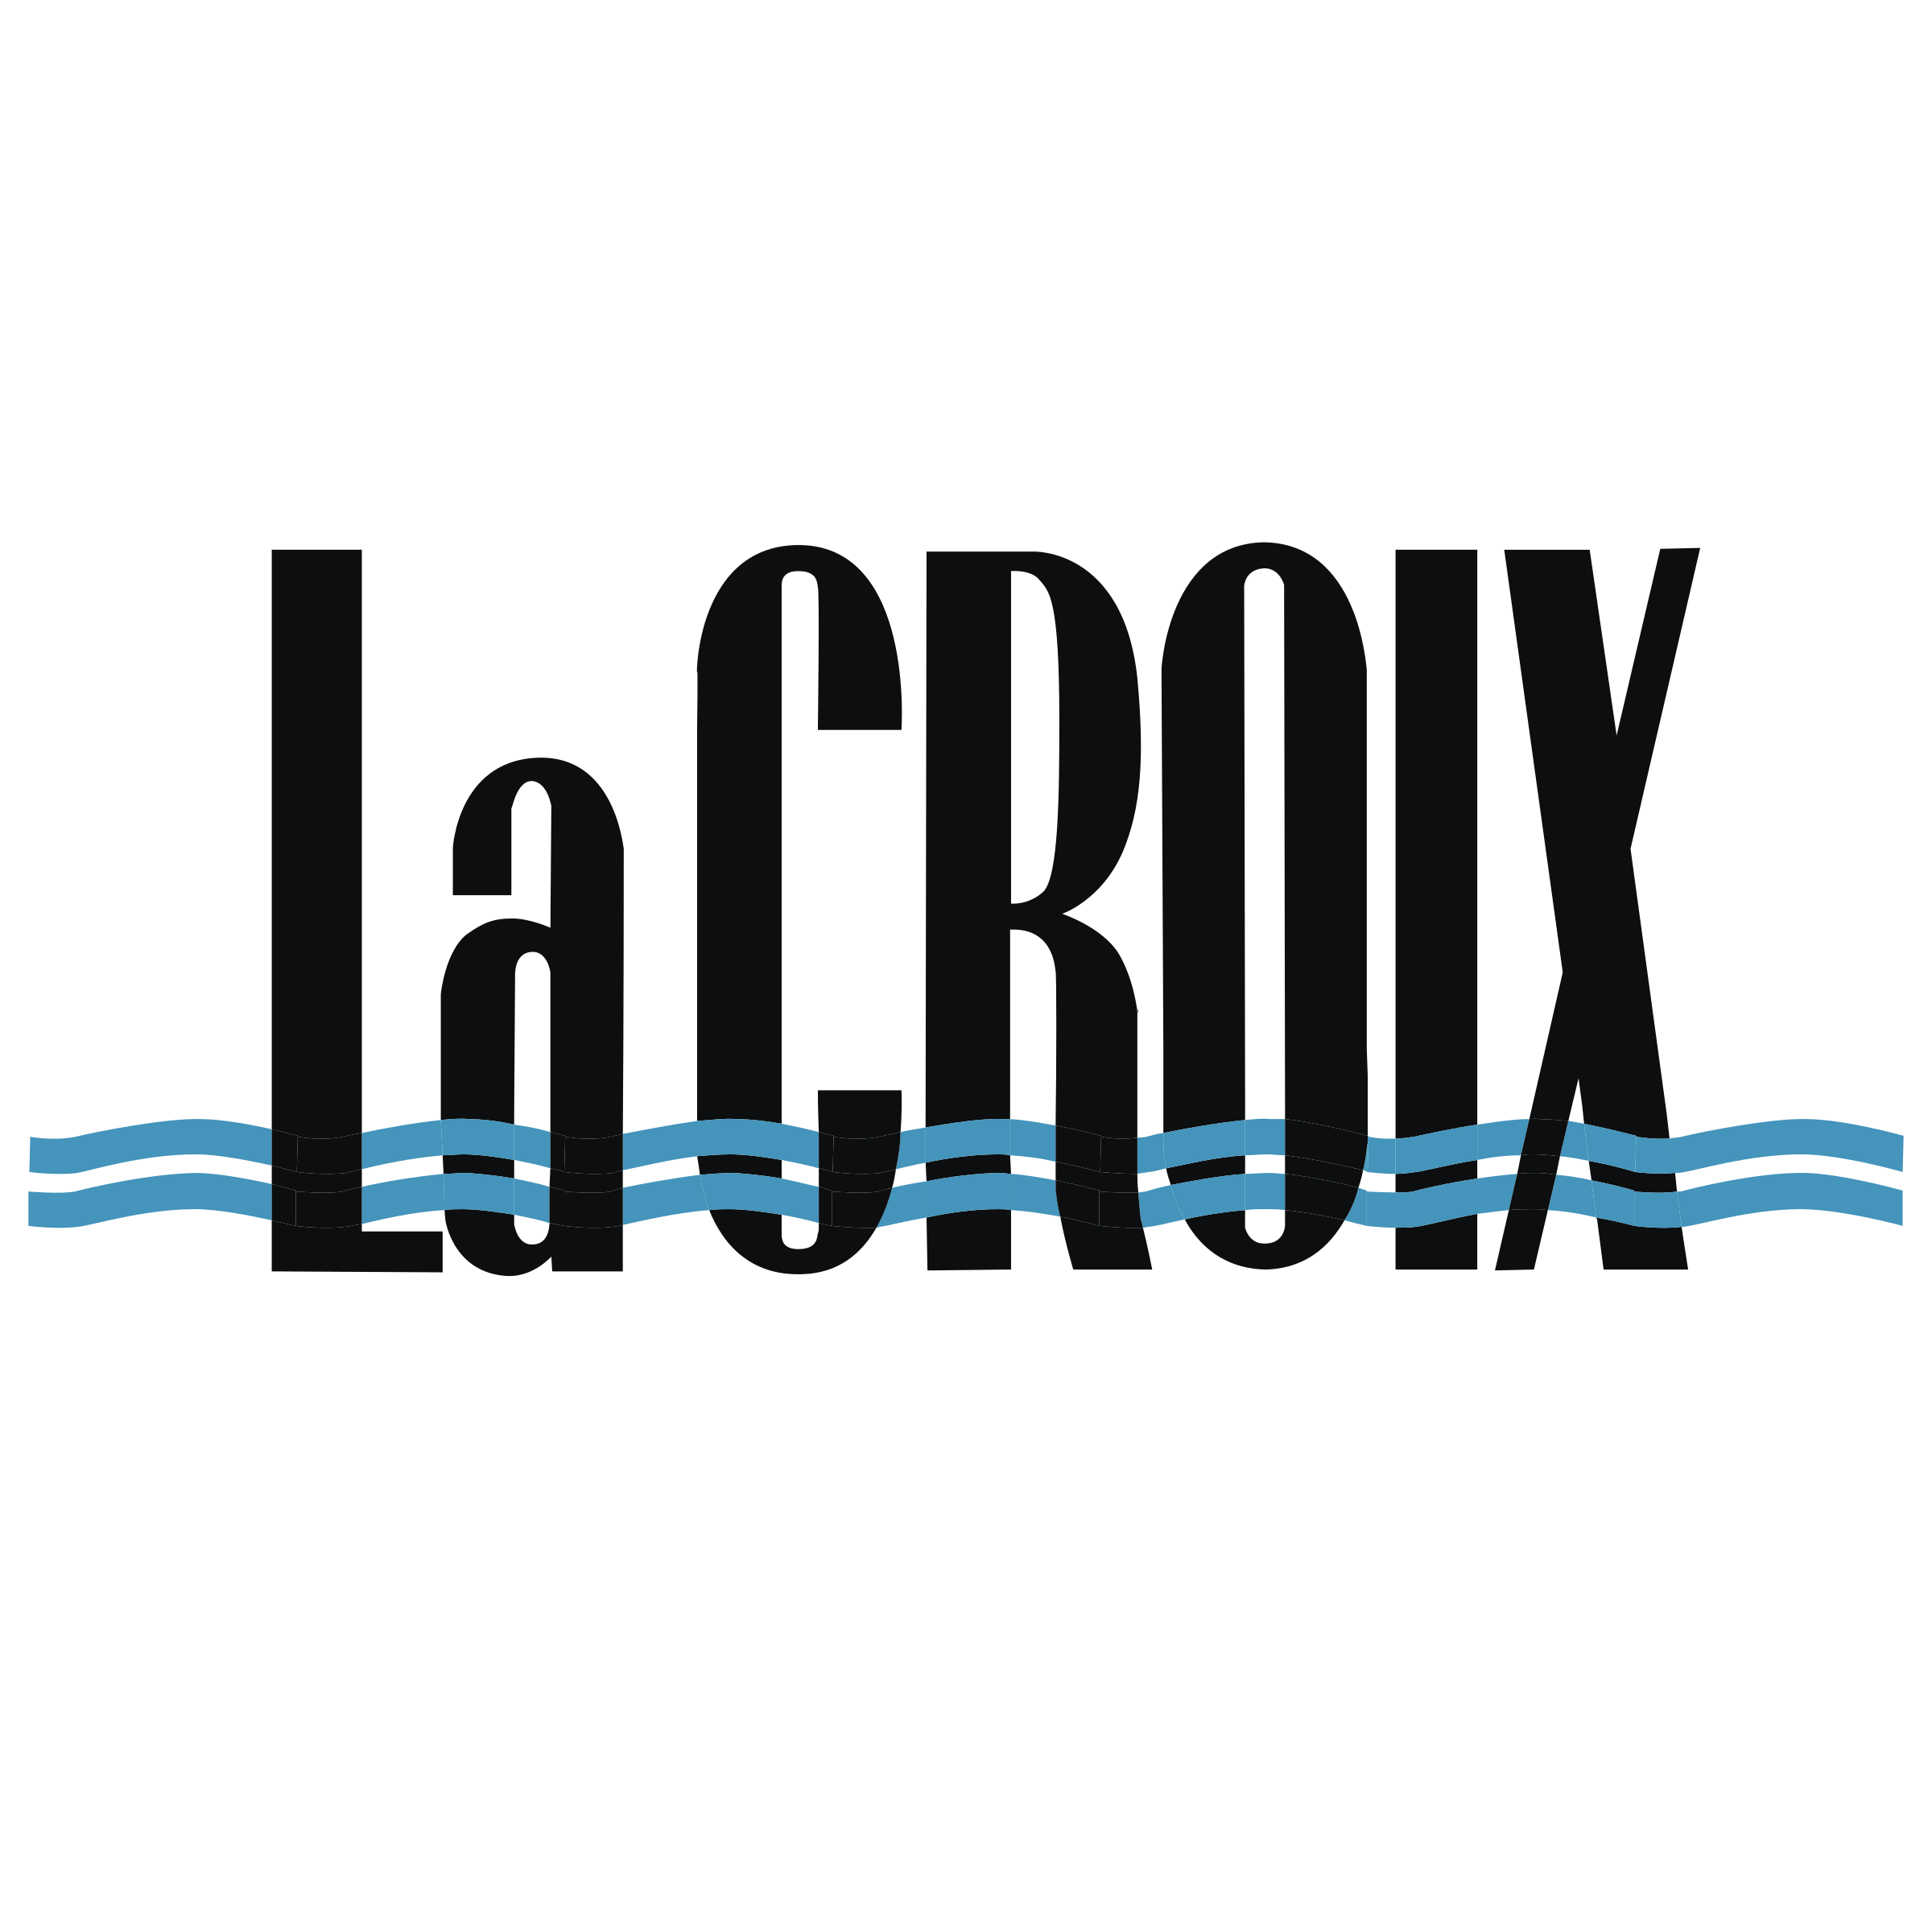 Lacroix Logo - LaCROIX Logo PNG Transparent & SVG Vector - Freebie Supply